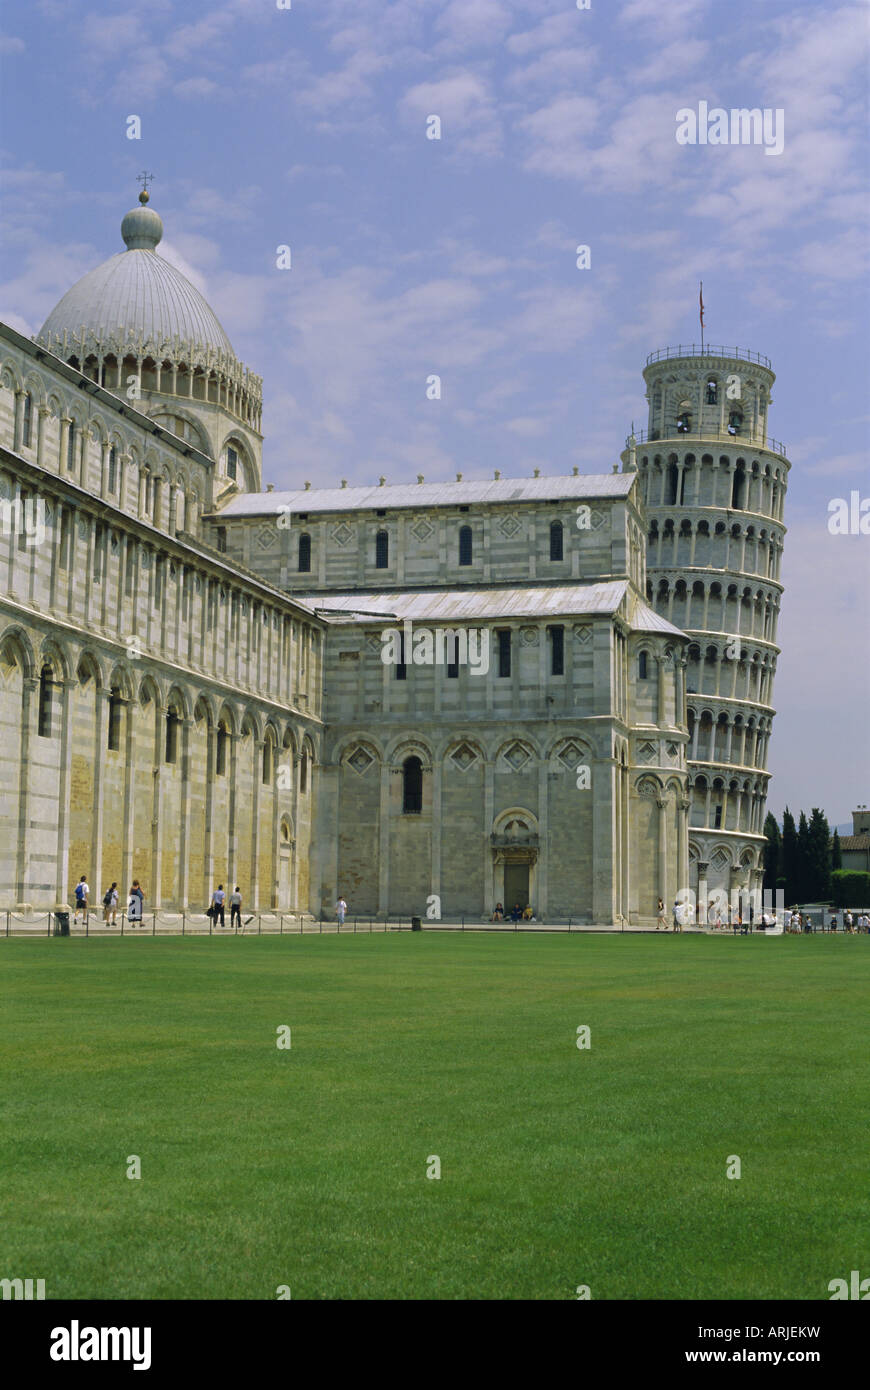 Cathédrale et Tour Penchée, Campo Dei Miracoli, Piazza del Duomo, UNESCO World Heritage site, Pise, Toscane, Italie, Europe Banque D'Images